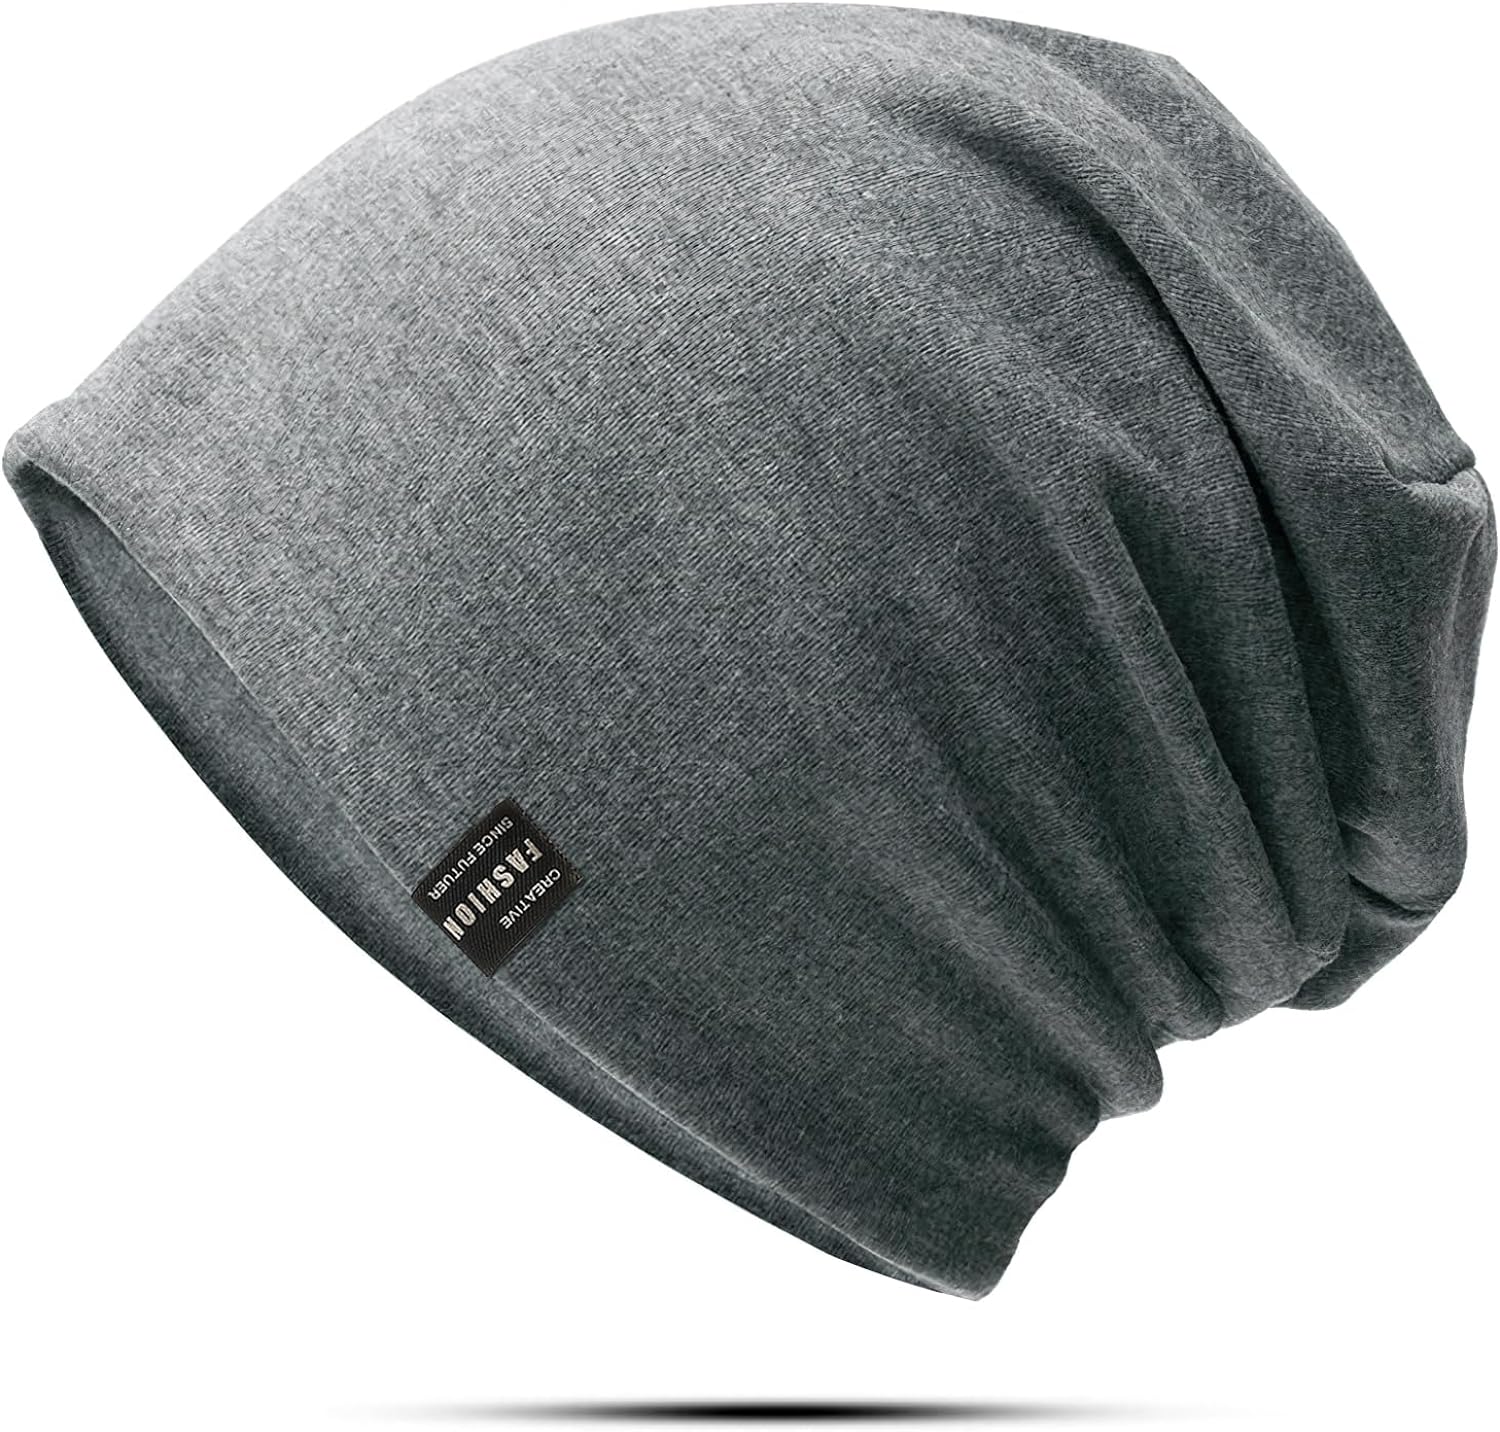 ニット帽子メンズ 防寒 秋冬 上品な光沢感 大きいサイズ 二重構造で暖かい ストレッチ性 代わりの防...